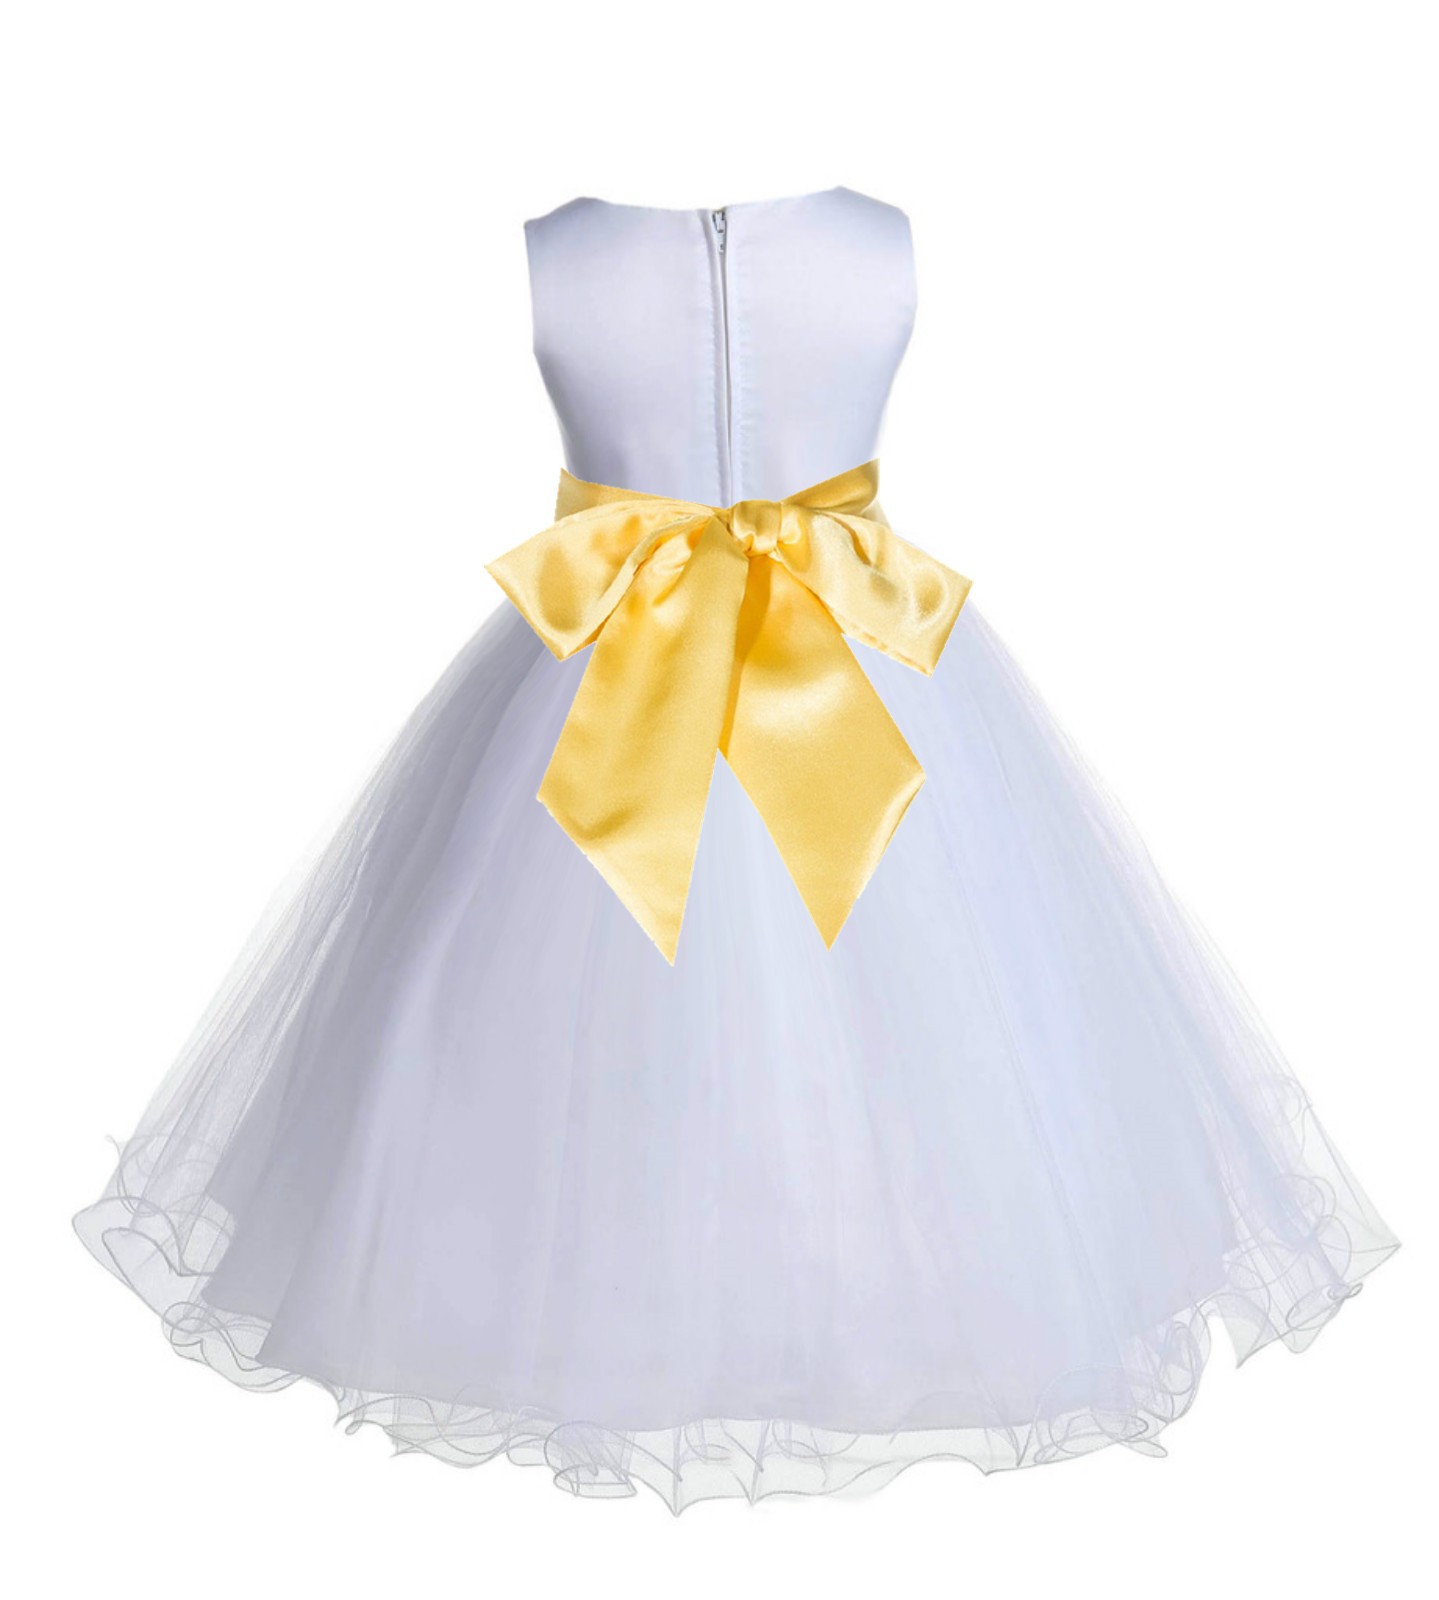 White/Sunbeam Tulle Rattail Edge Flower Girl Dress Wedding Bridal 829S